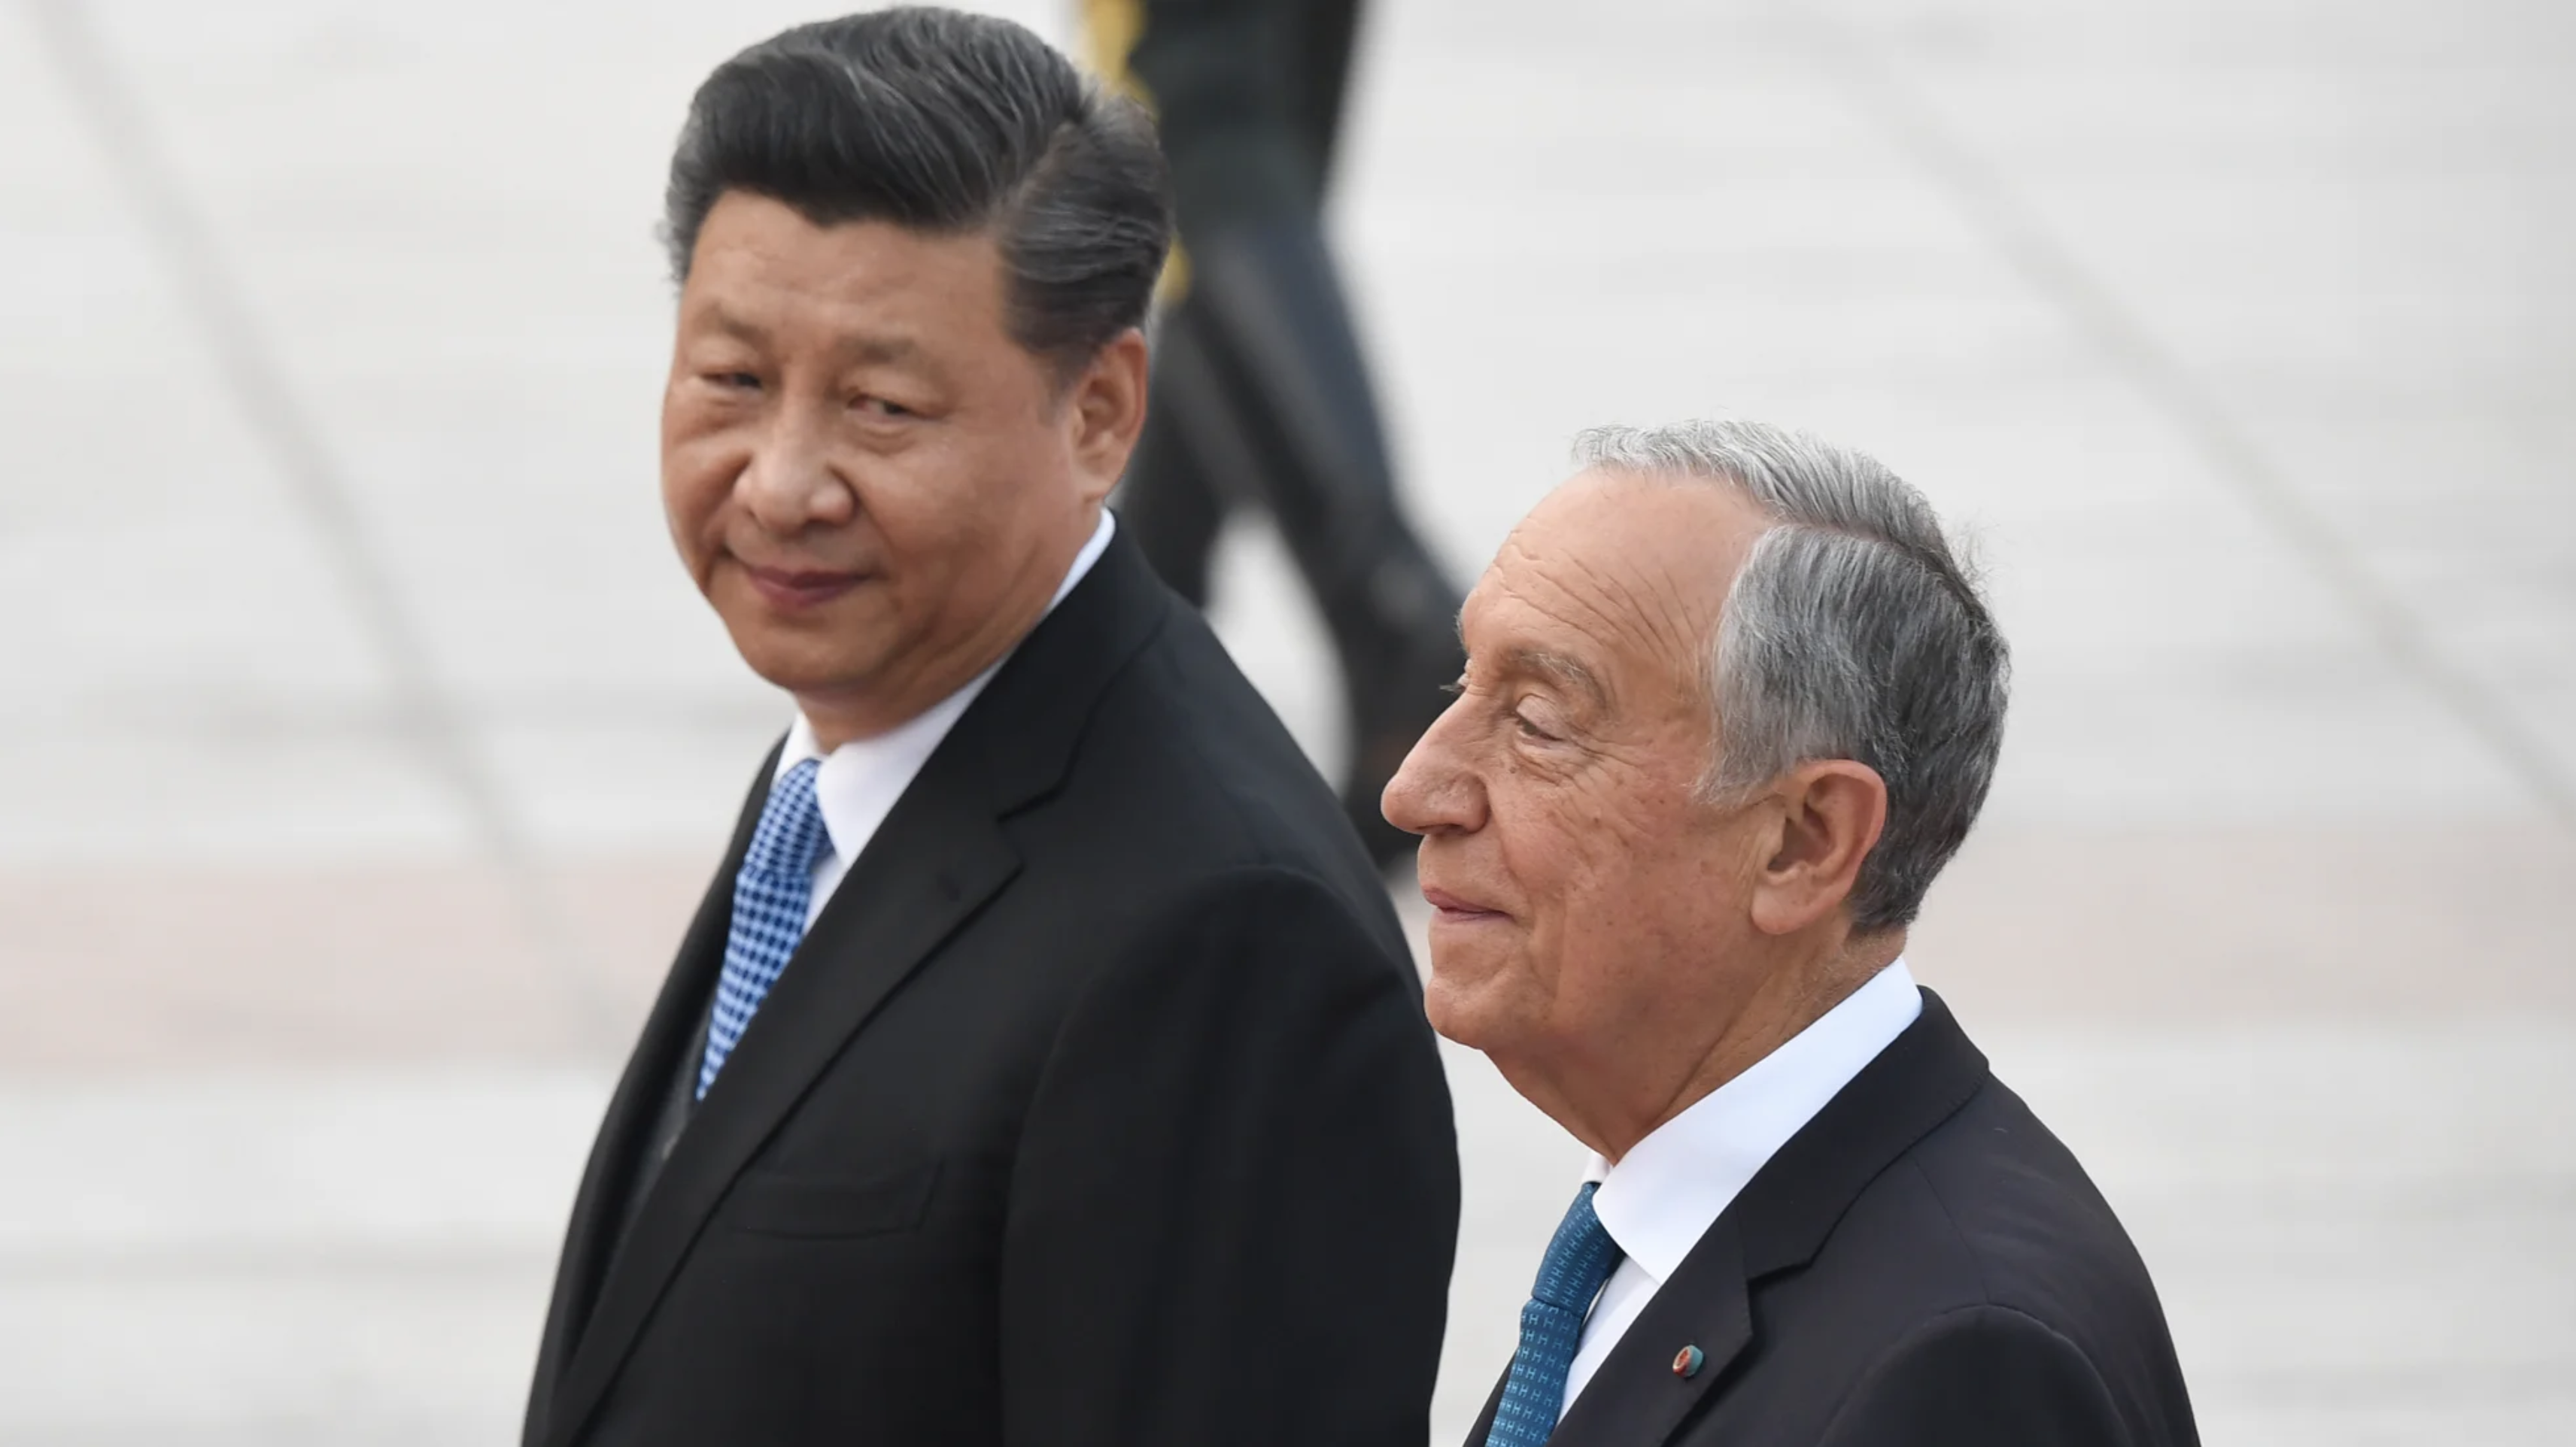 Xi Jinping and Marcelo Rebelo de Sousa